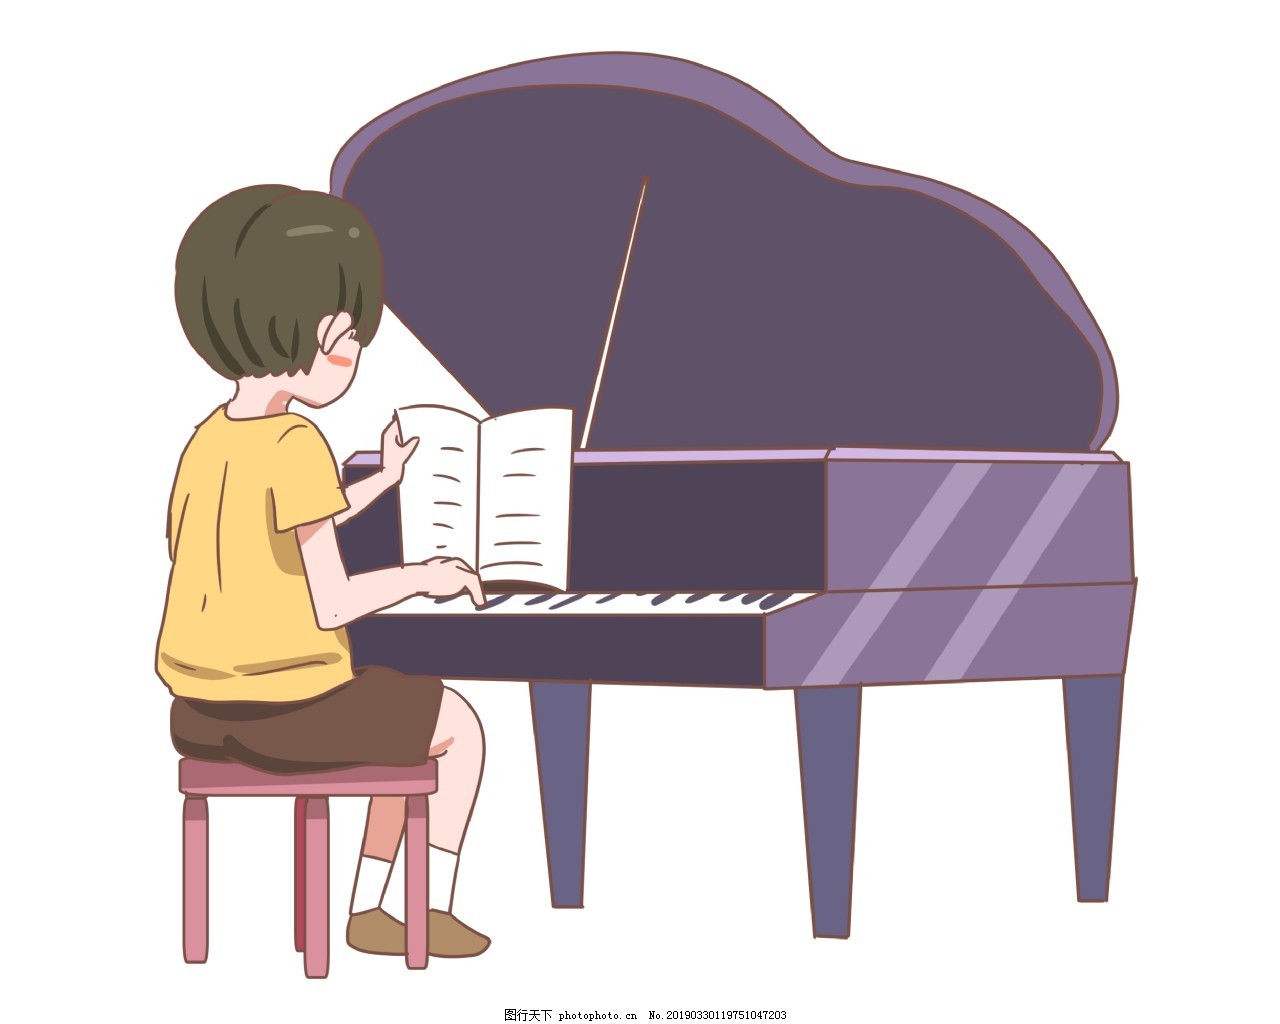 弹钢琴的动画片小男孩 向量例证. 插画 包括有 了解, 经典, 逗人喜爱, 教育, 钢琴演奏家, 少许 - 128300706